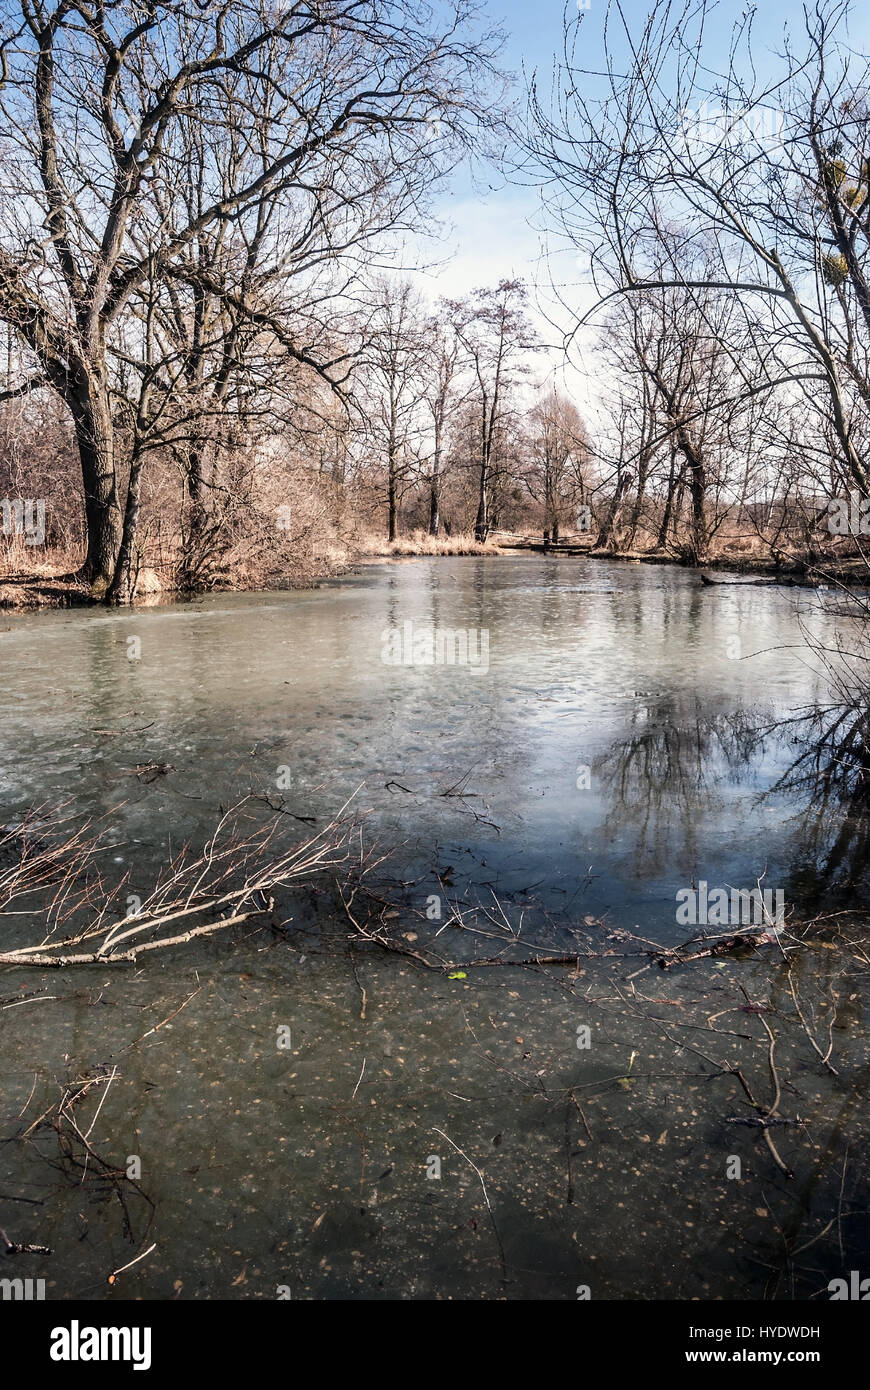 Teilweise slanaky River Lake mit Bäumen und blauer Himmel im Frühjahr Landschaftsschutzgebietes poodri in der Nähe von studenka Stadt in der Tschechischen Republik eingefroren Stockfoto